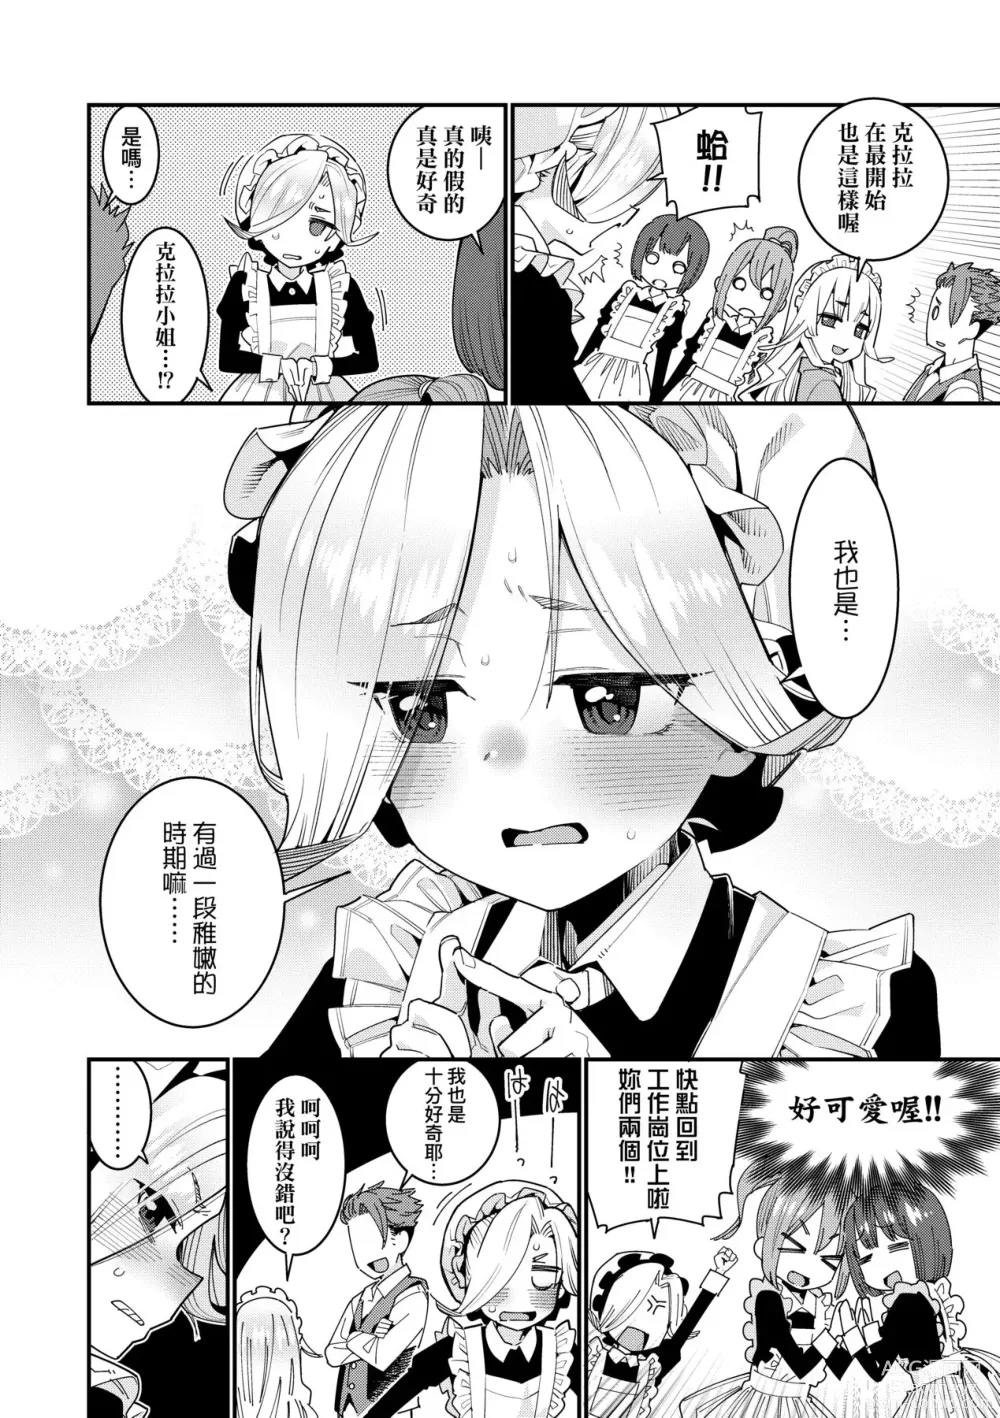 Page 29 of manga Itoshiki Wagaya (decensored)